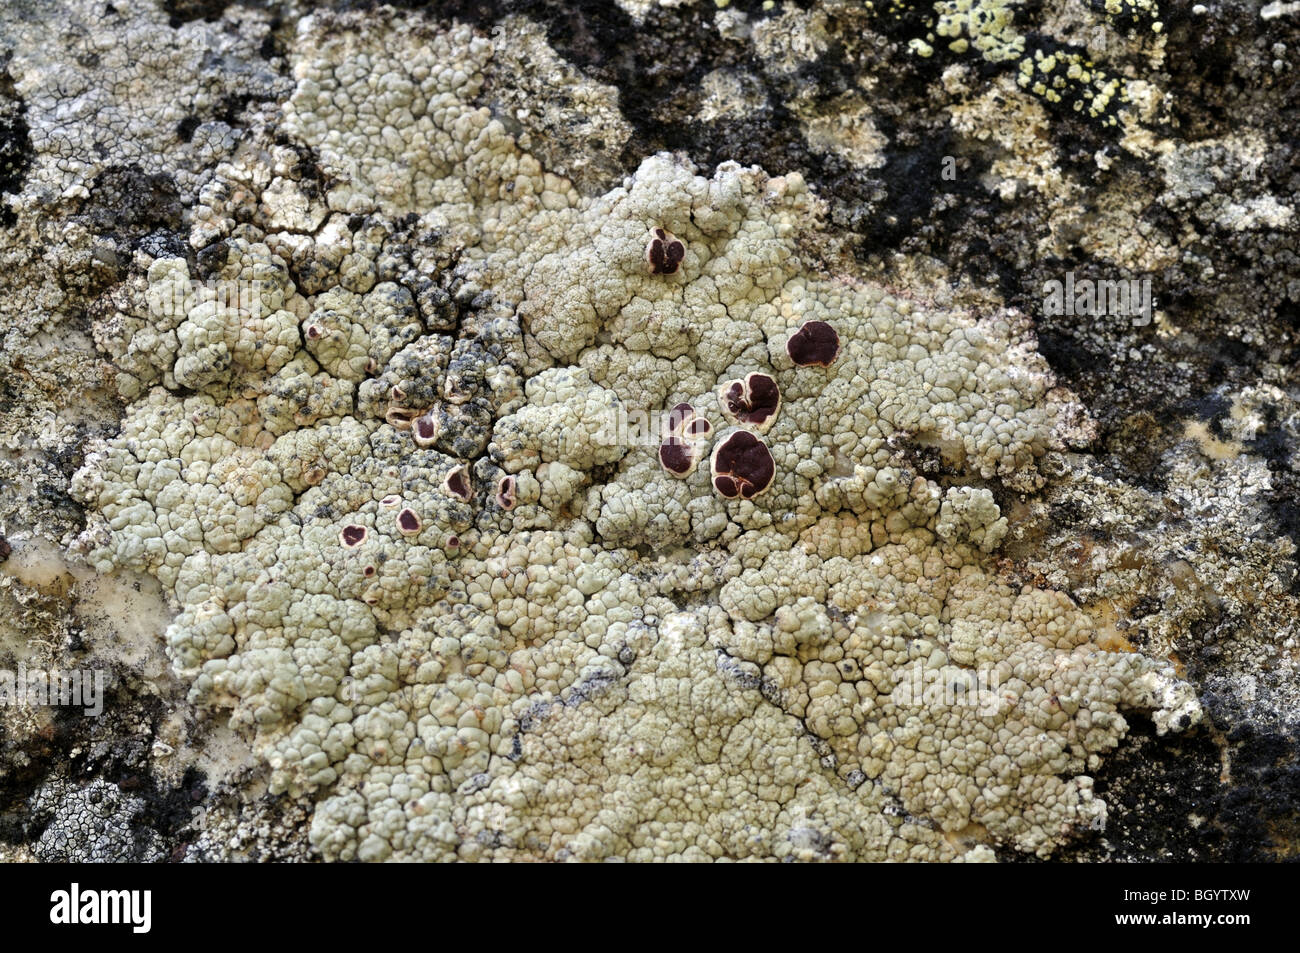 licheni lichen Lecanora sp. parco nazionale Gran Paradiso Valle d'Aosta Italy Stock Photo